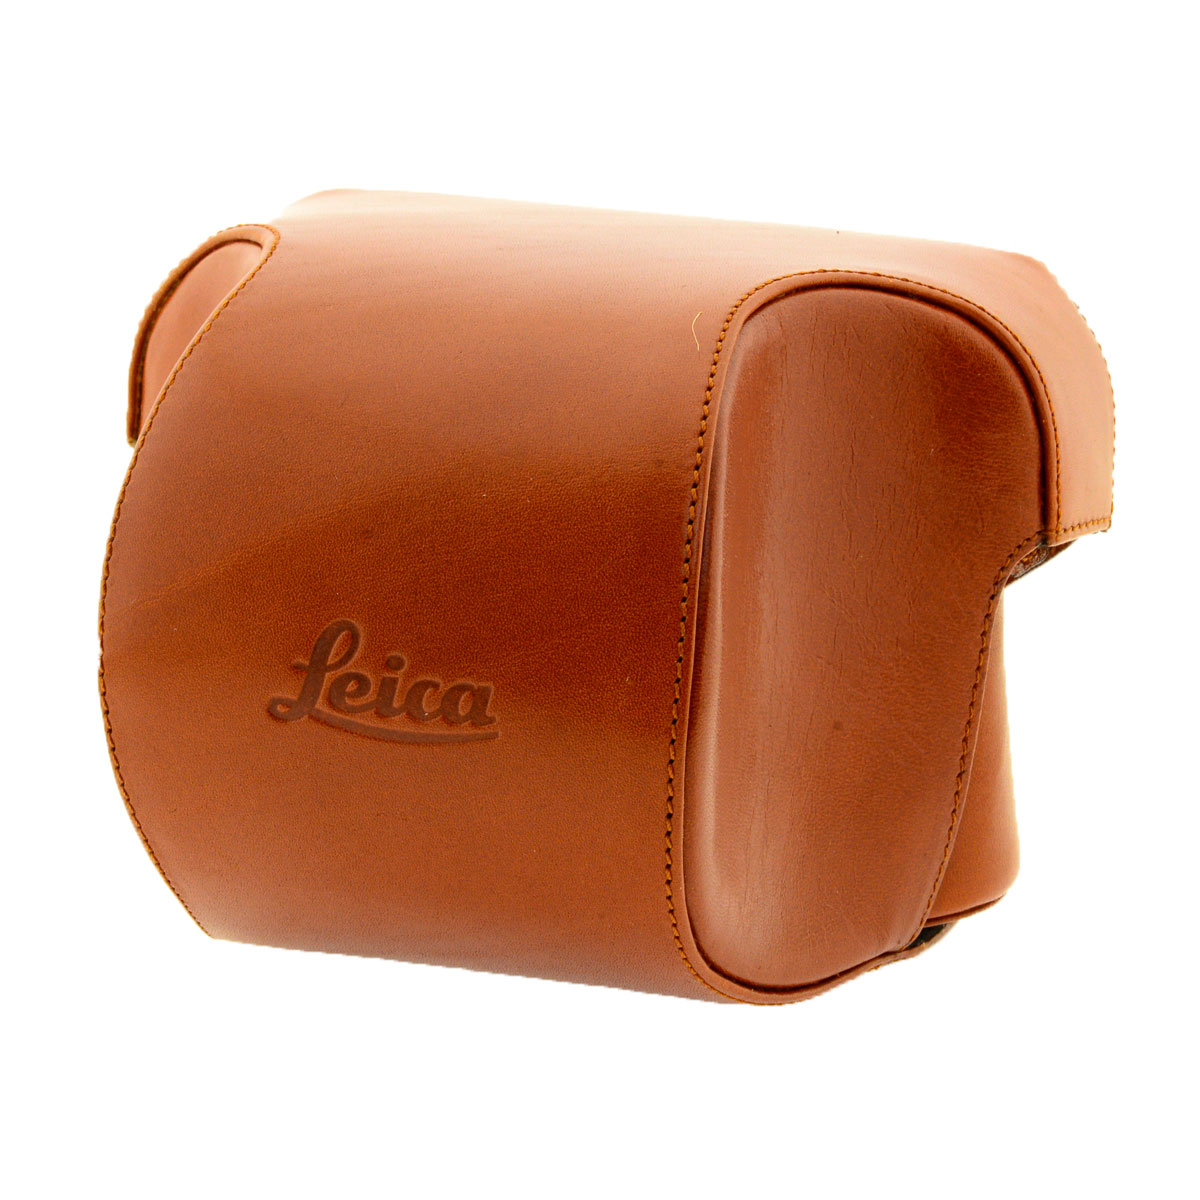 Чехол Leica Leather Case (для Leica М6/M7) cuir naturel cognac,кожаный, цвет коричневый б/у